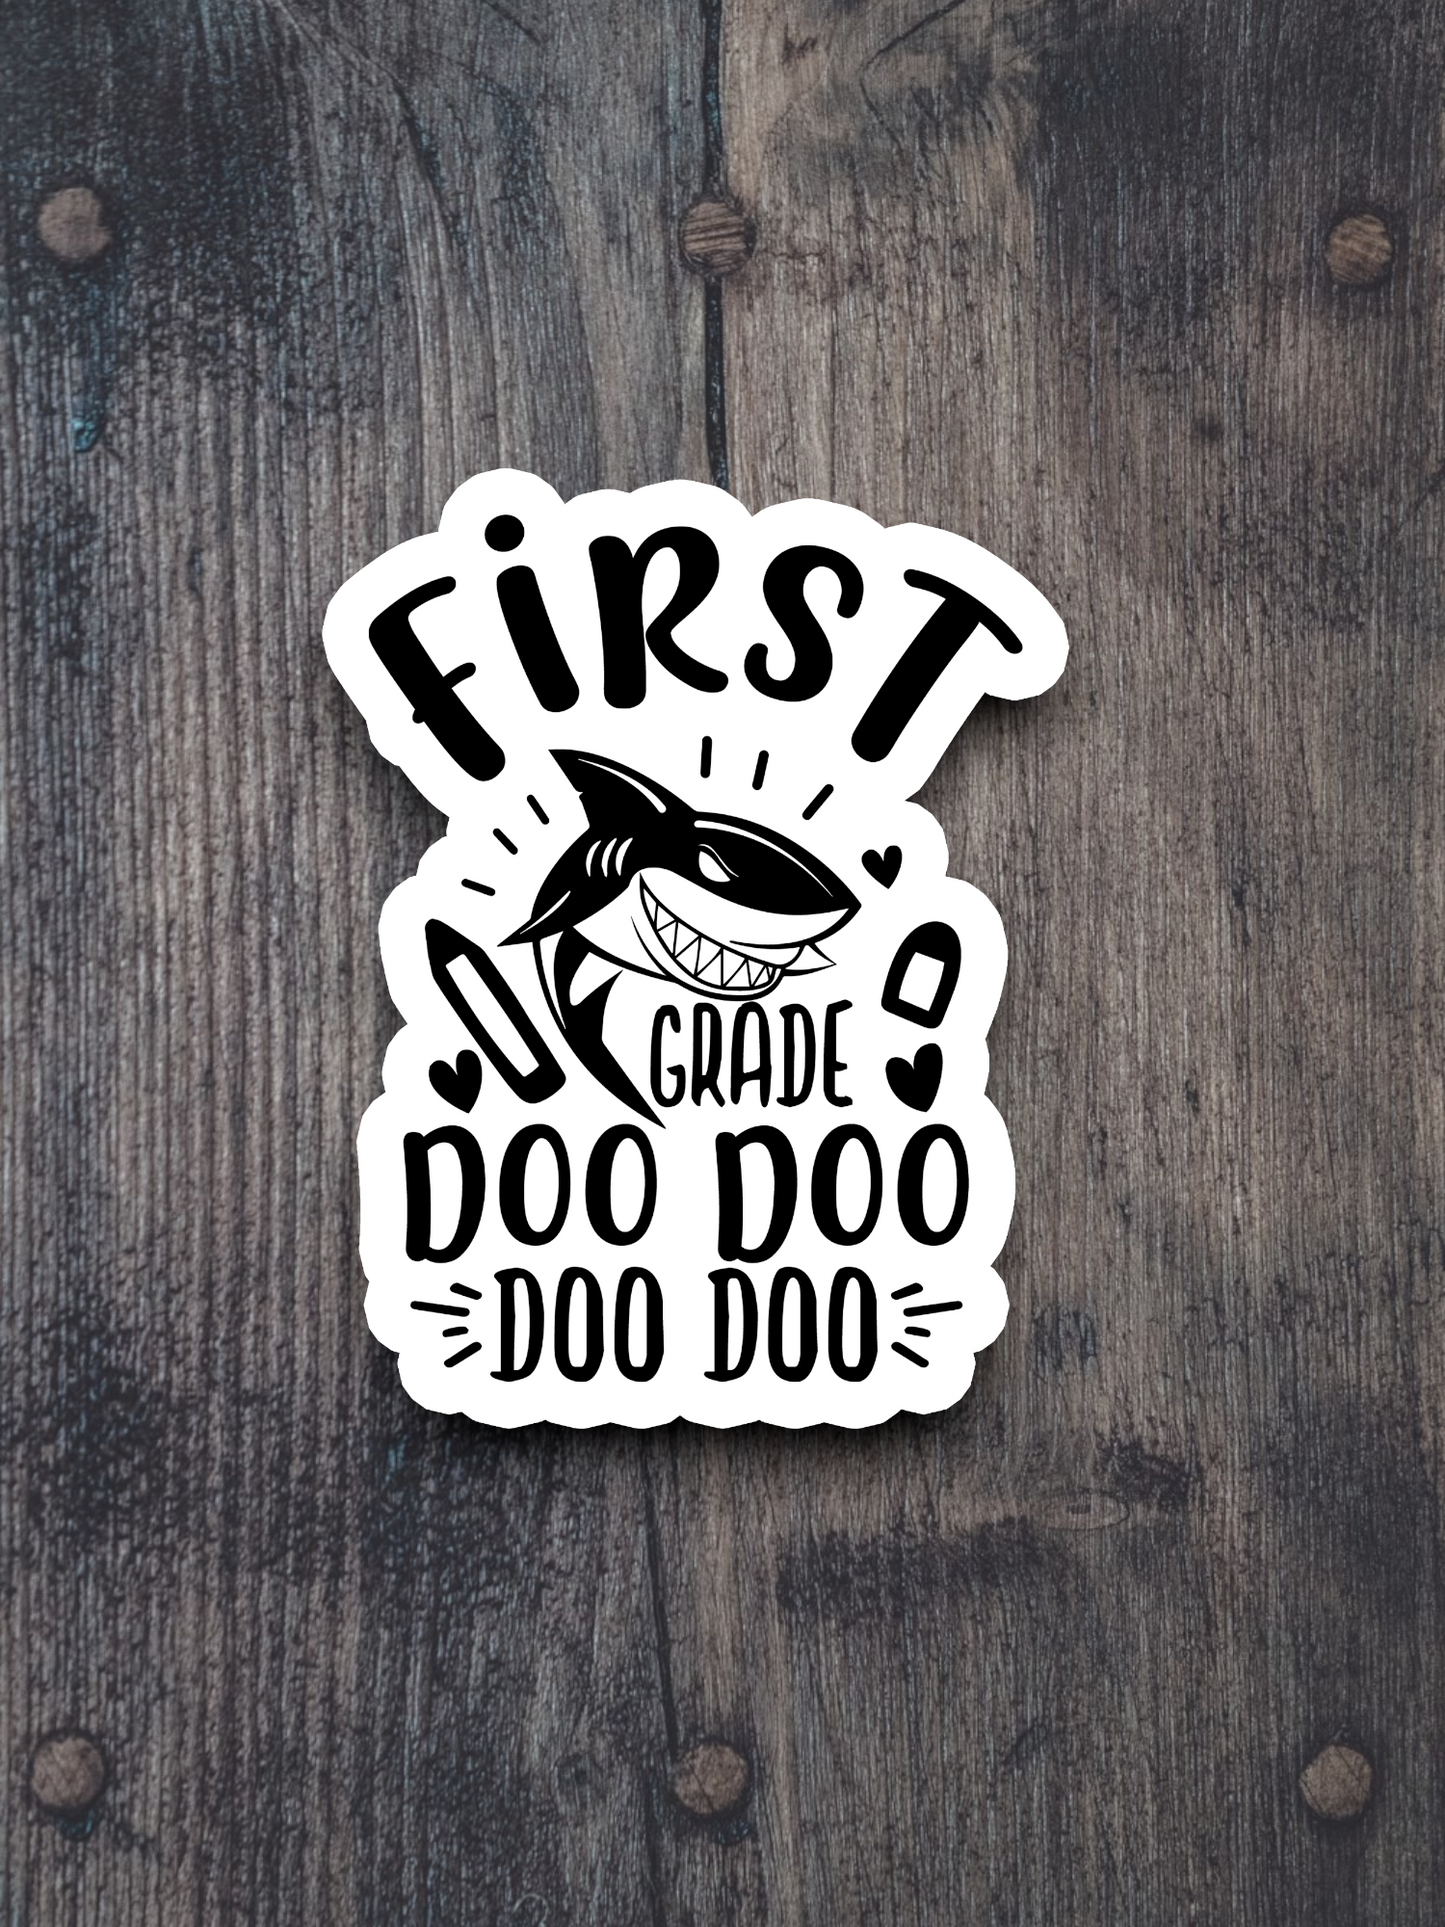 First Grade Doo Doo Doo Doo School Sticker